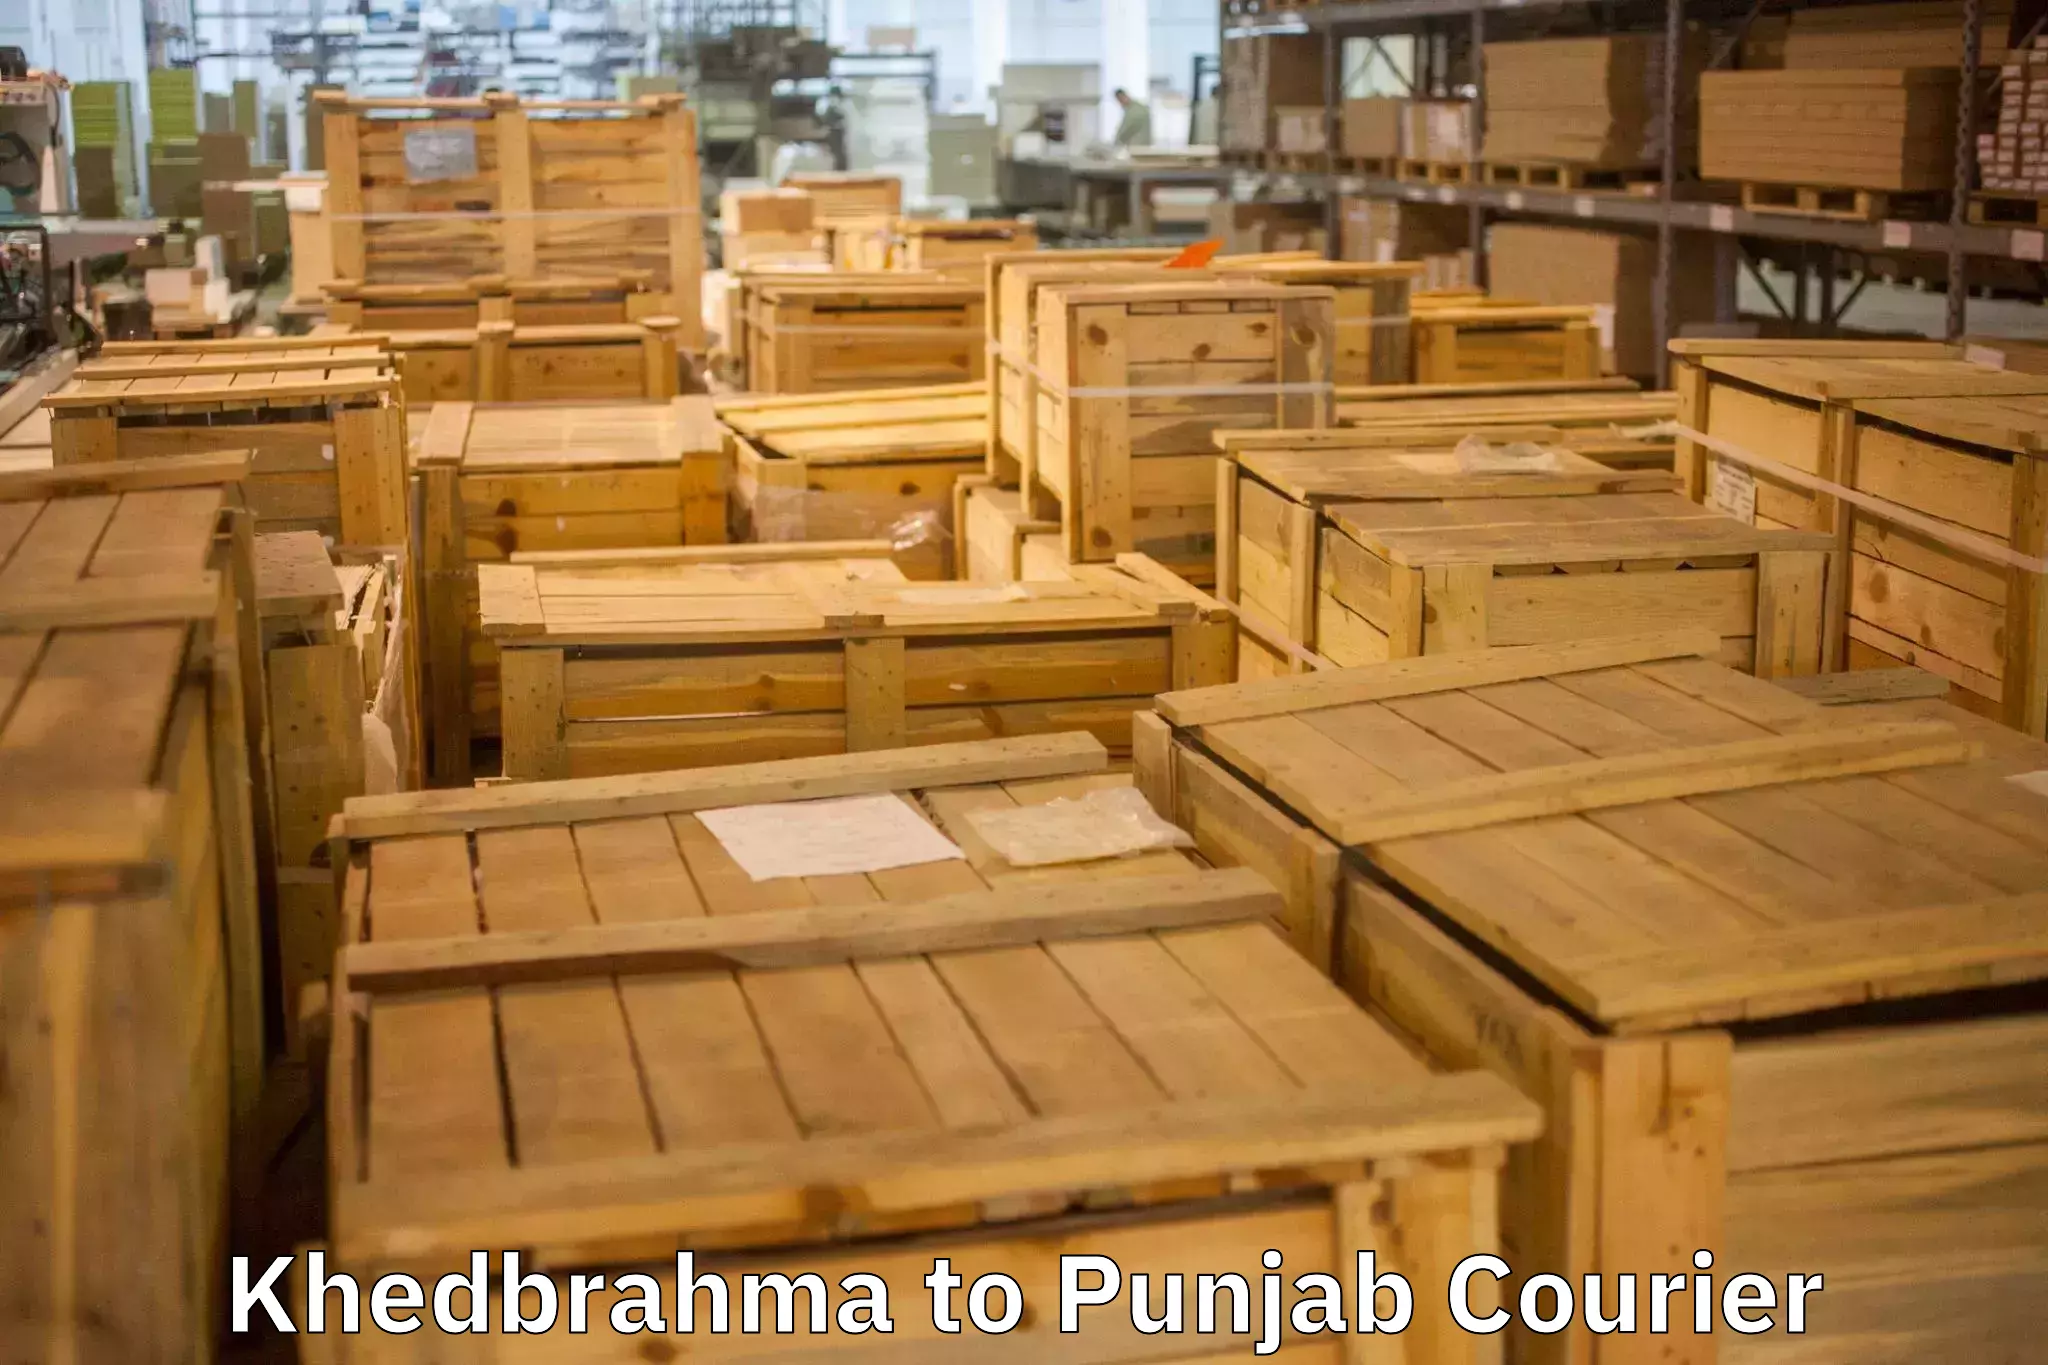 Furniture relocation services Khedbrahma to Jalalabad